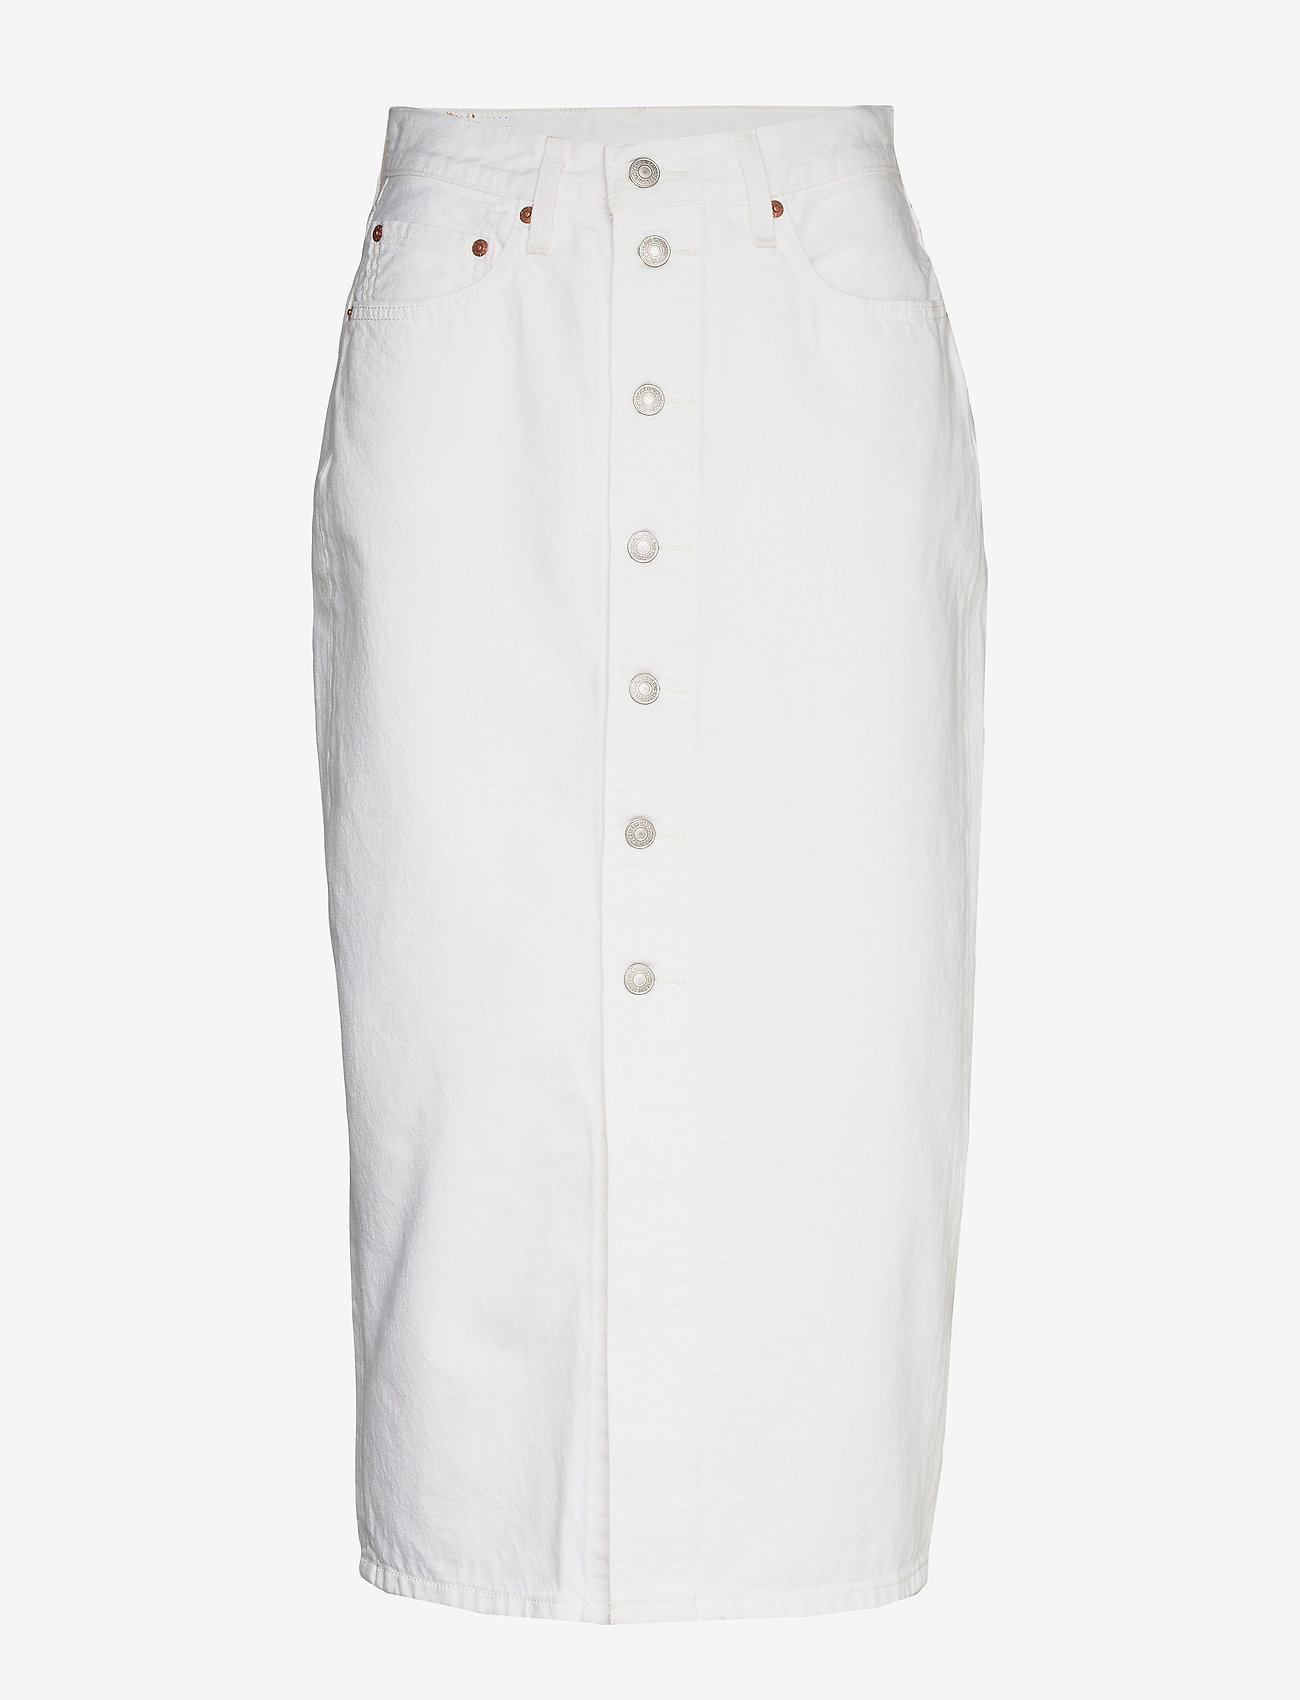 high waisted white skirt